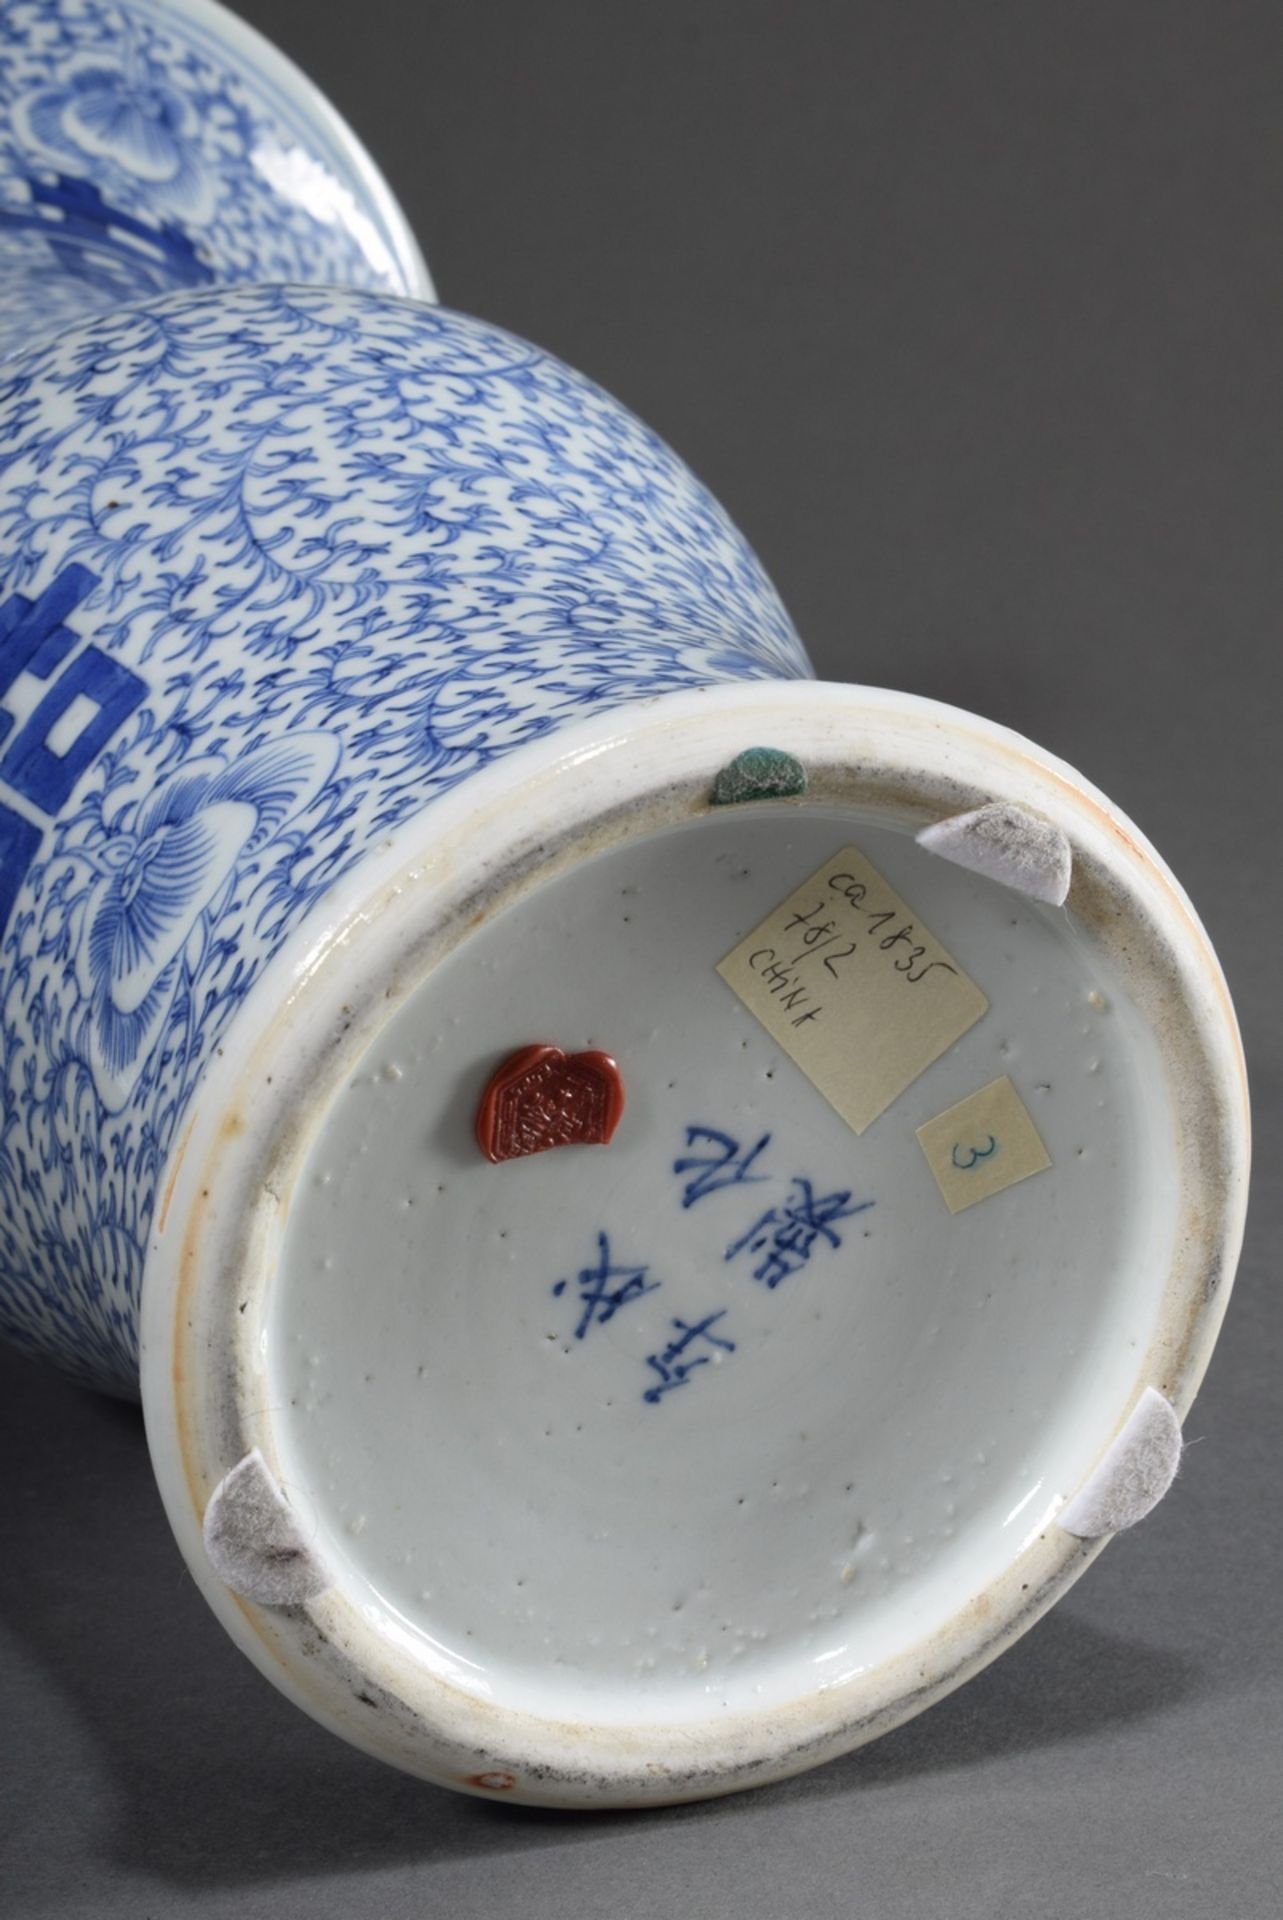 Chinesische Porzellan "Gu" Vase mit Blaumalerei "Glückszeichen" auf floralem Fond, H. 41cm, Ø 24cm - Bild 5 aus 6